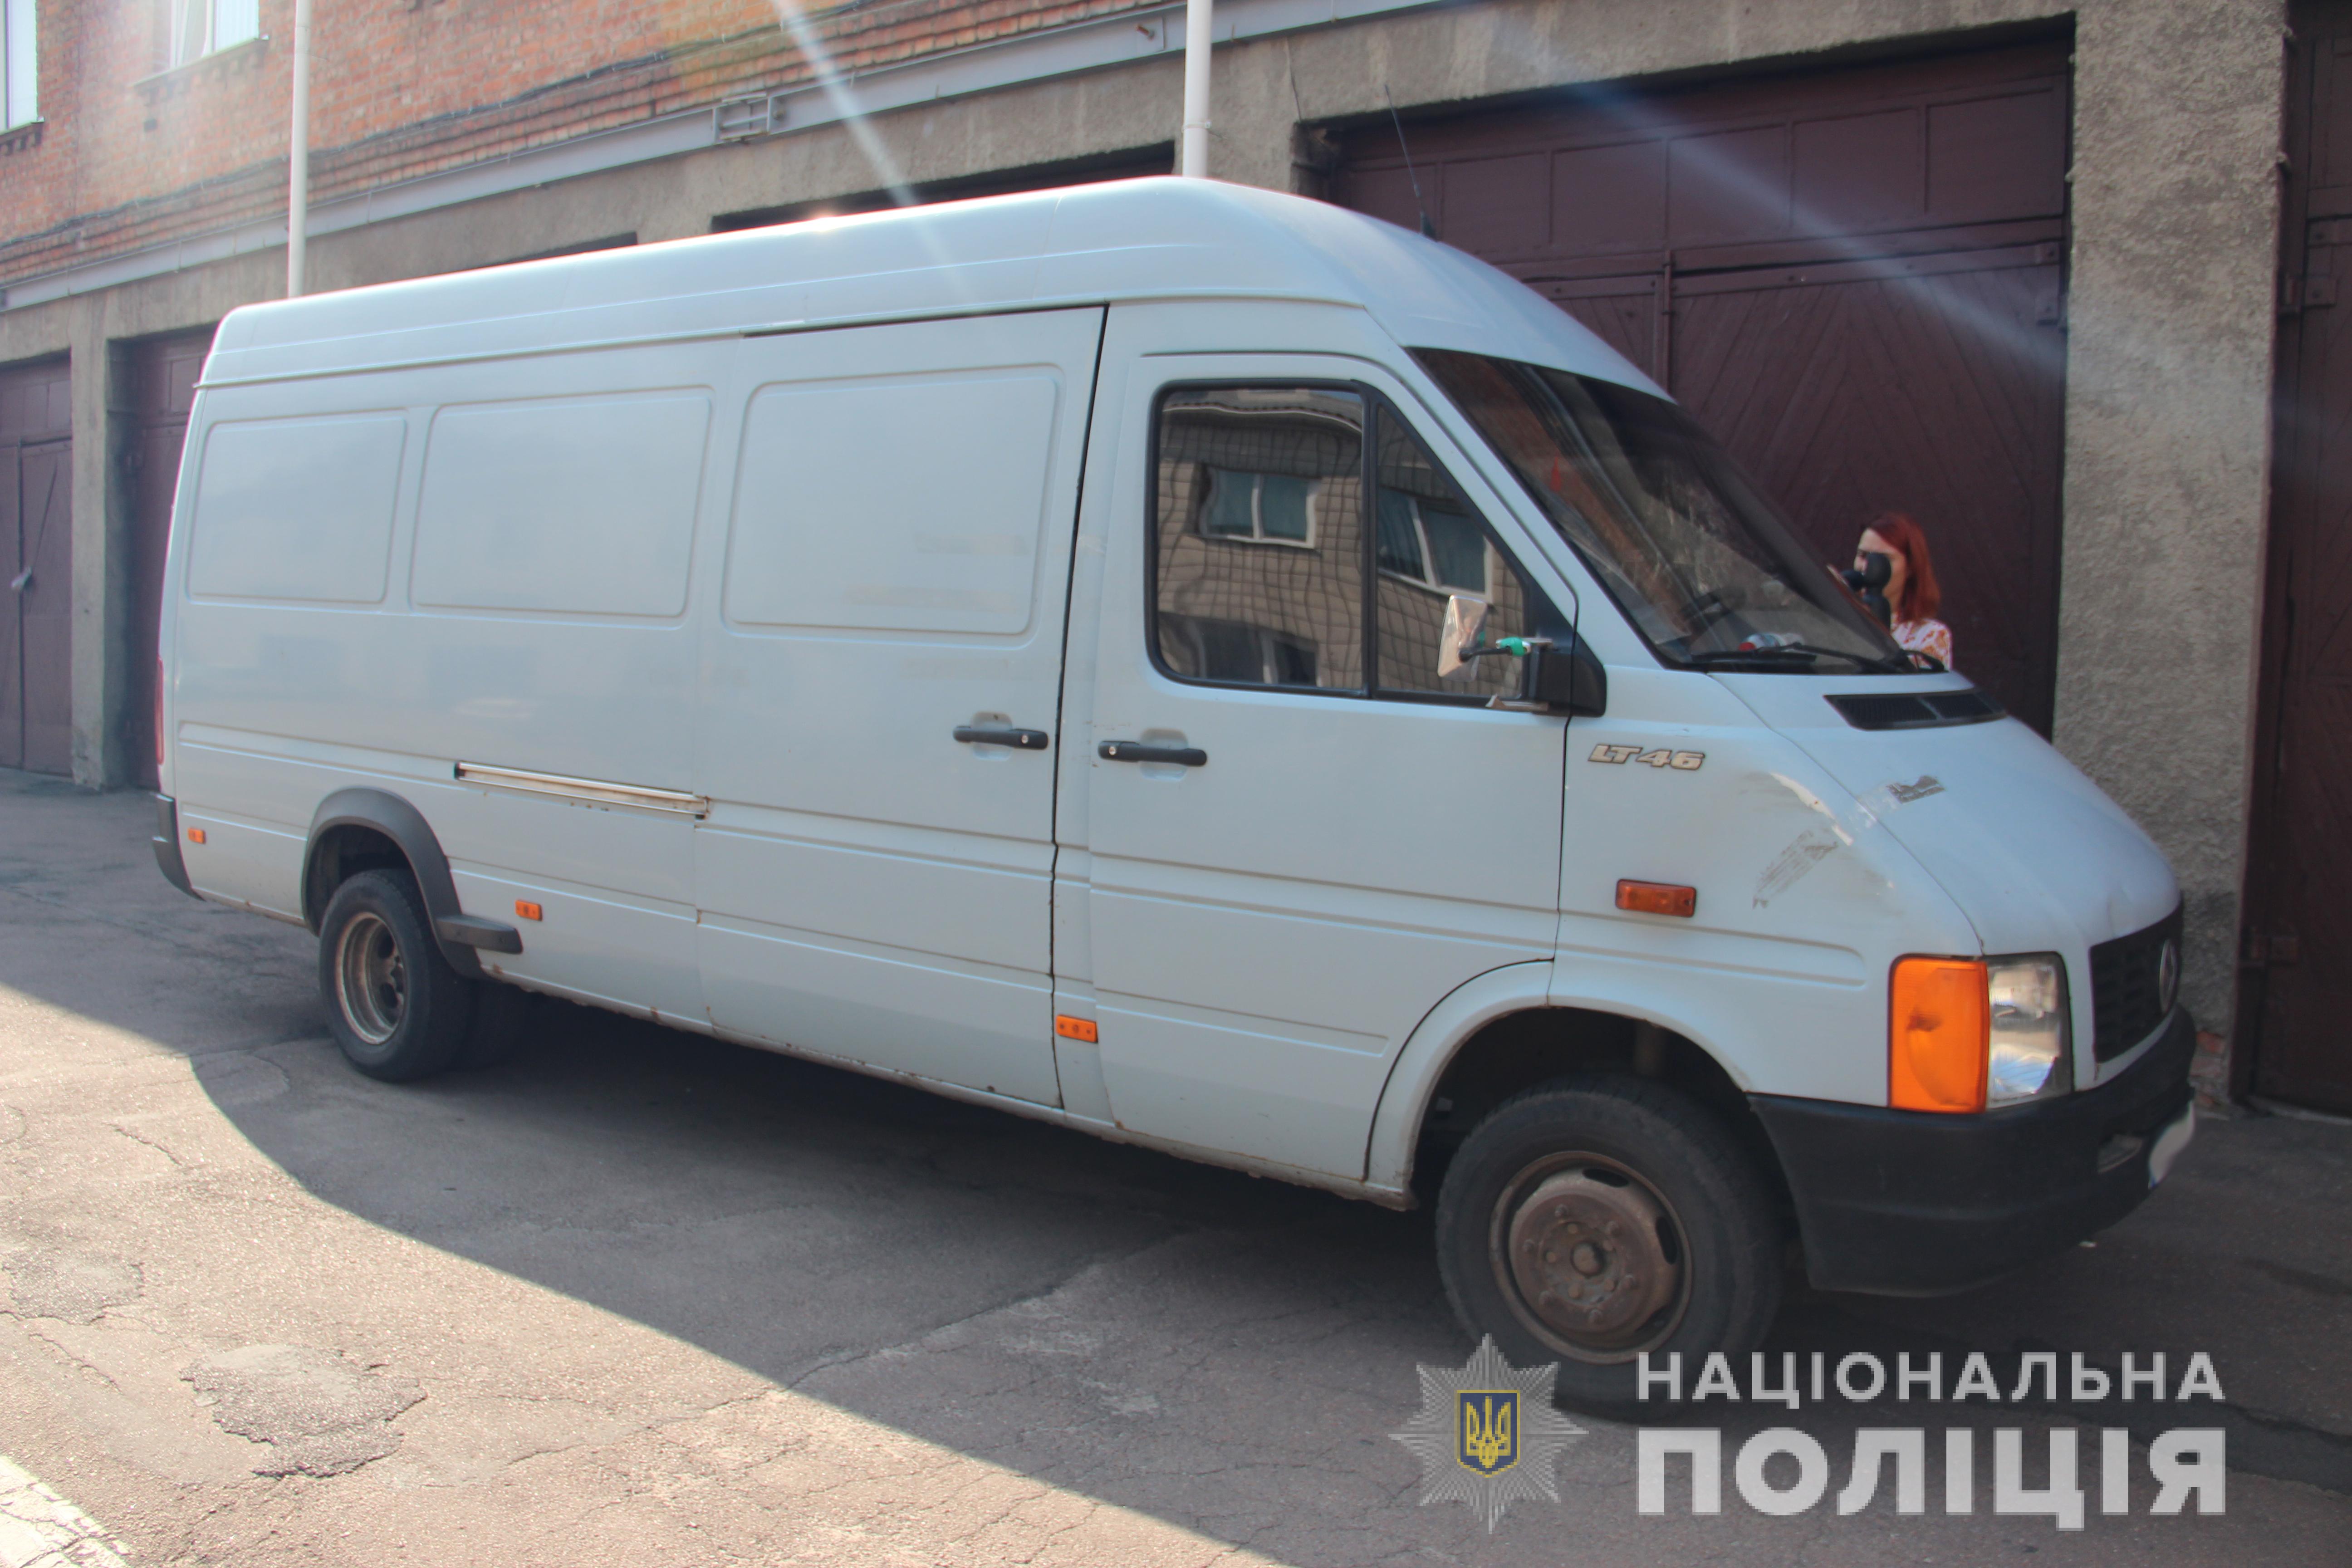 Українському волонтеру, який був у полоні сепаратистів, повернули його мікроавтобус (ФОТО)